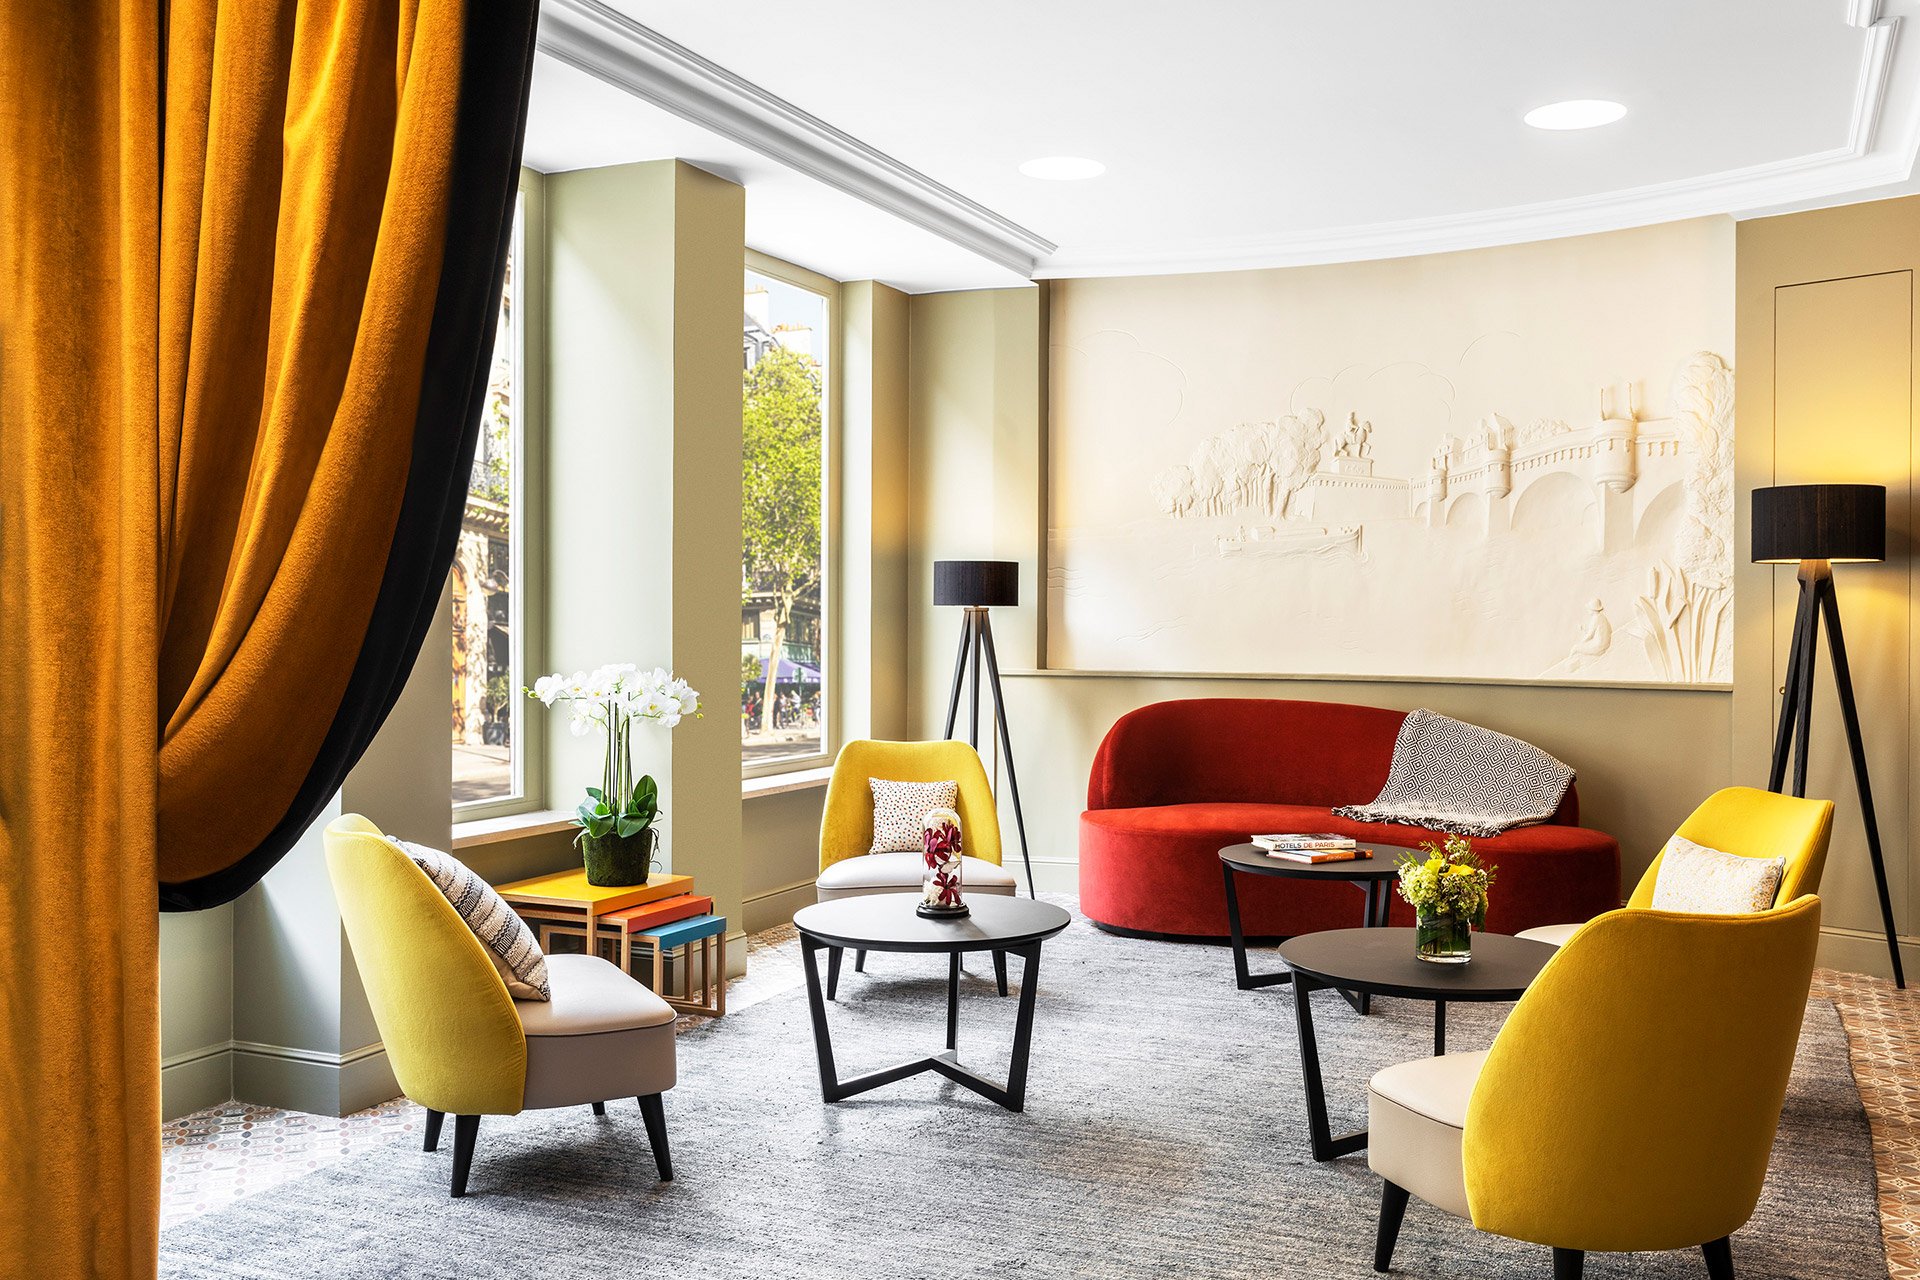 Hotel Ducs de Bourgogne | Hotel near Les Halles in Paris